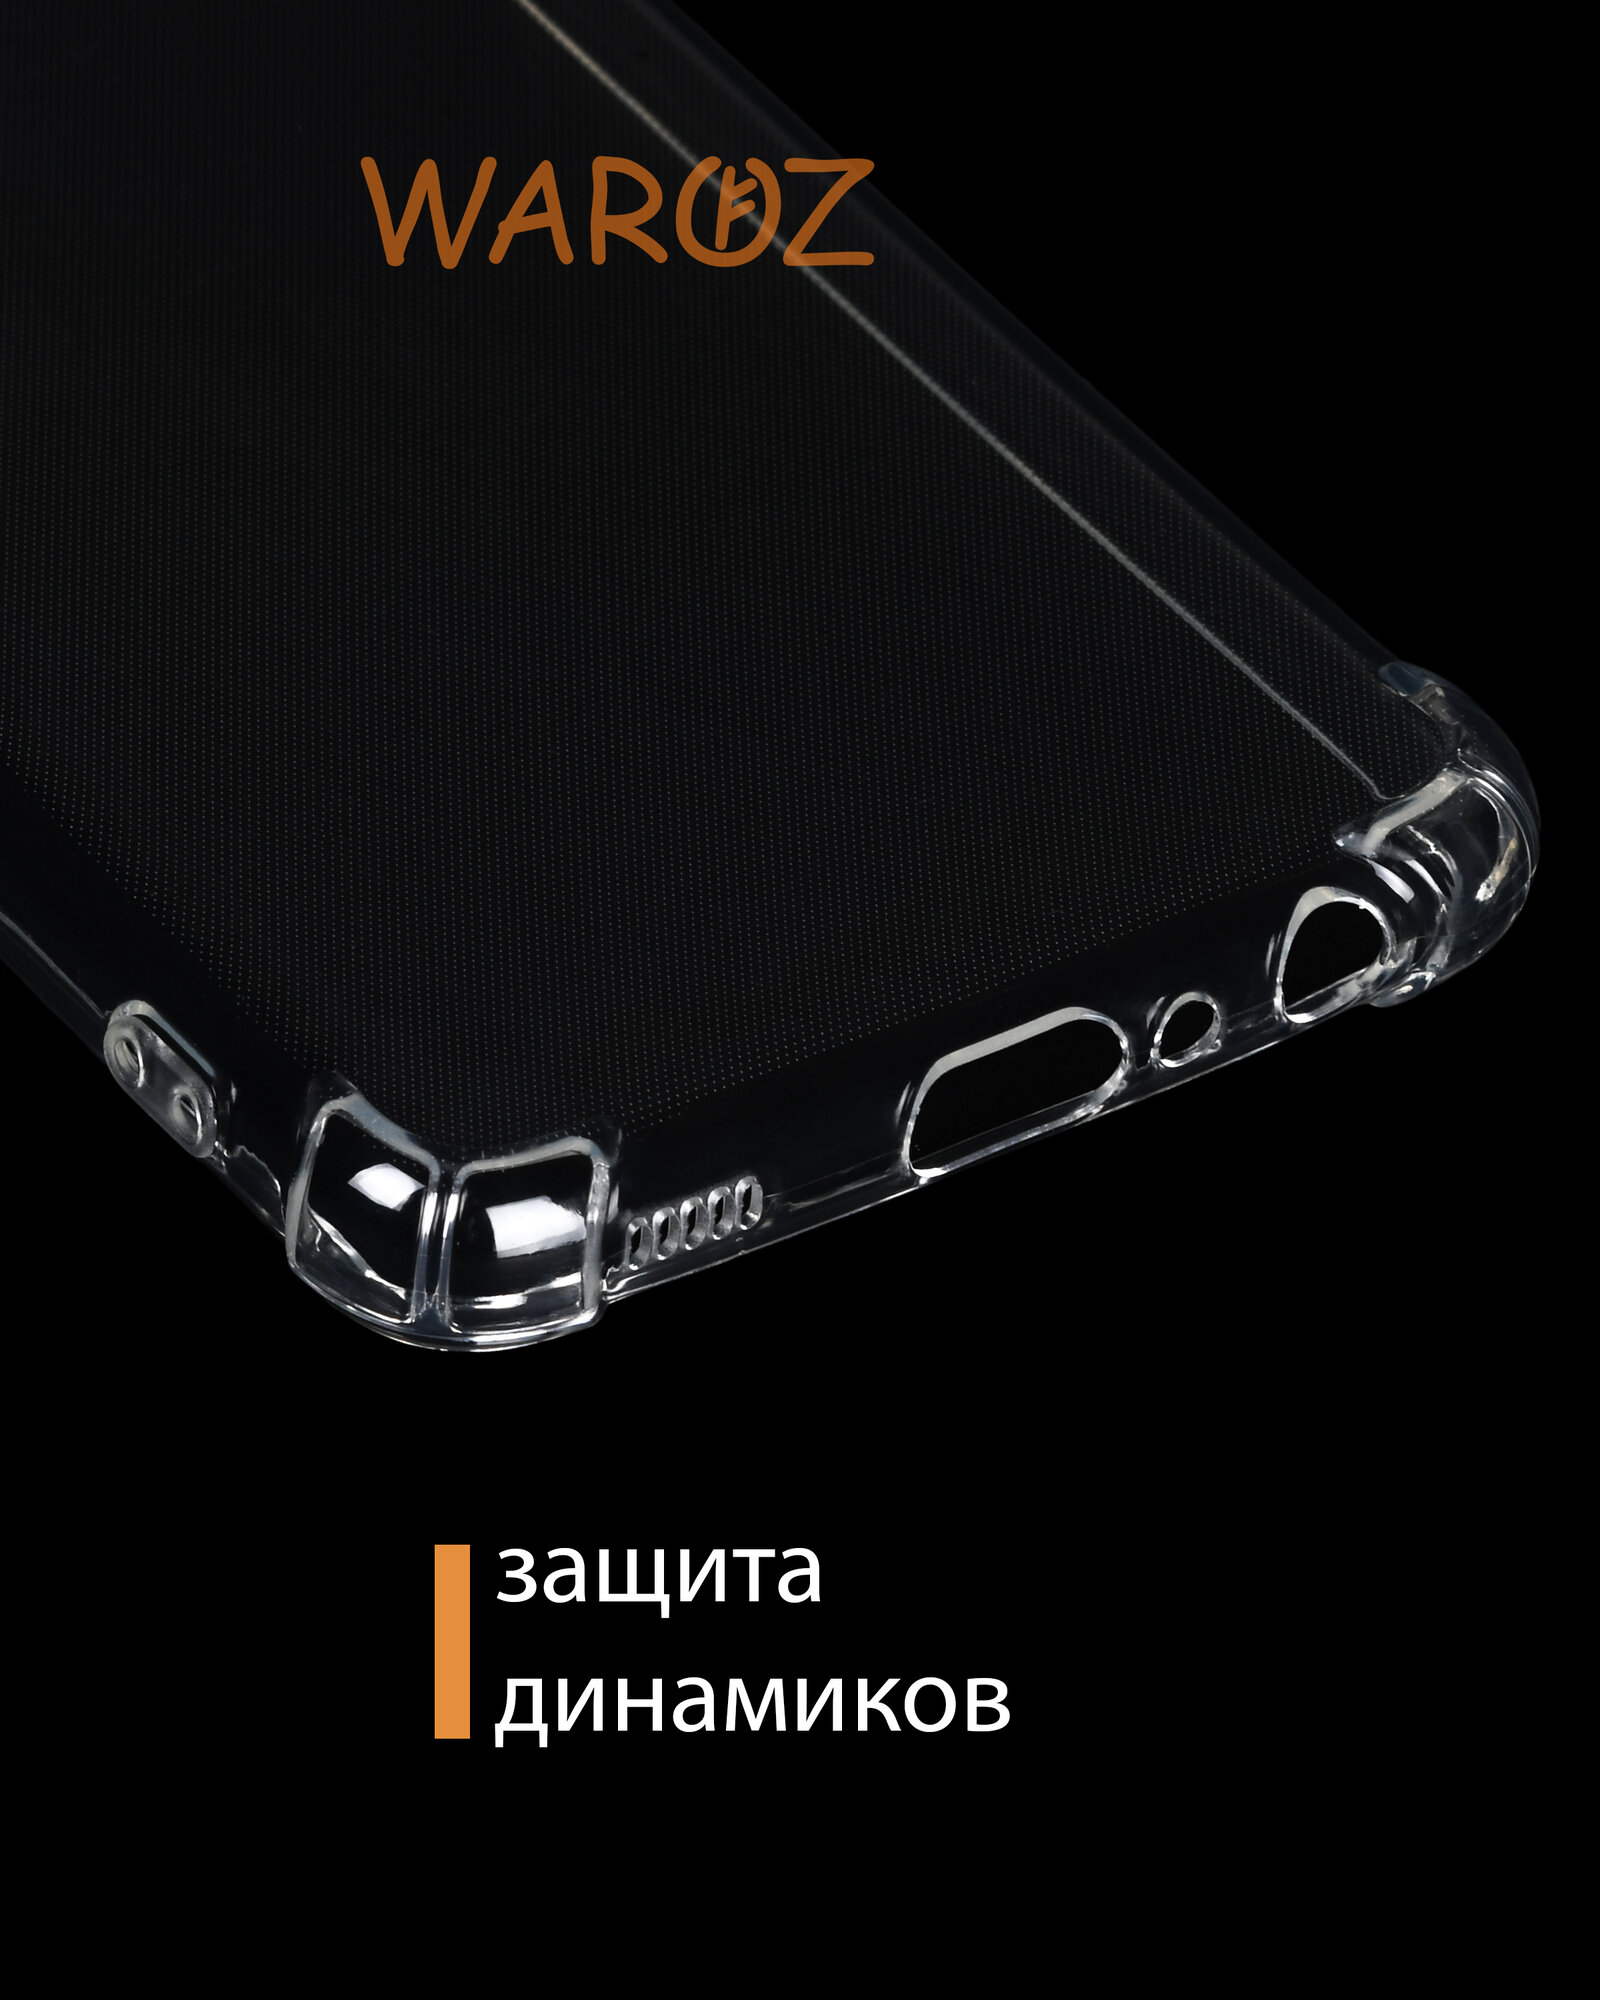 Чехол для смартфона Samsung Galaxy A22, M22 4G силиконовый противоударный с защитой камеры, бампер с усиленными углами для телефона Самсунг Галакси А22, М22 4 Джи прозрачный